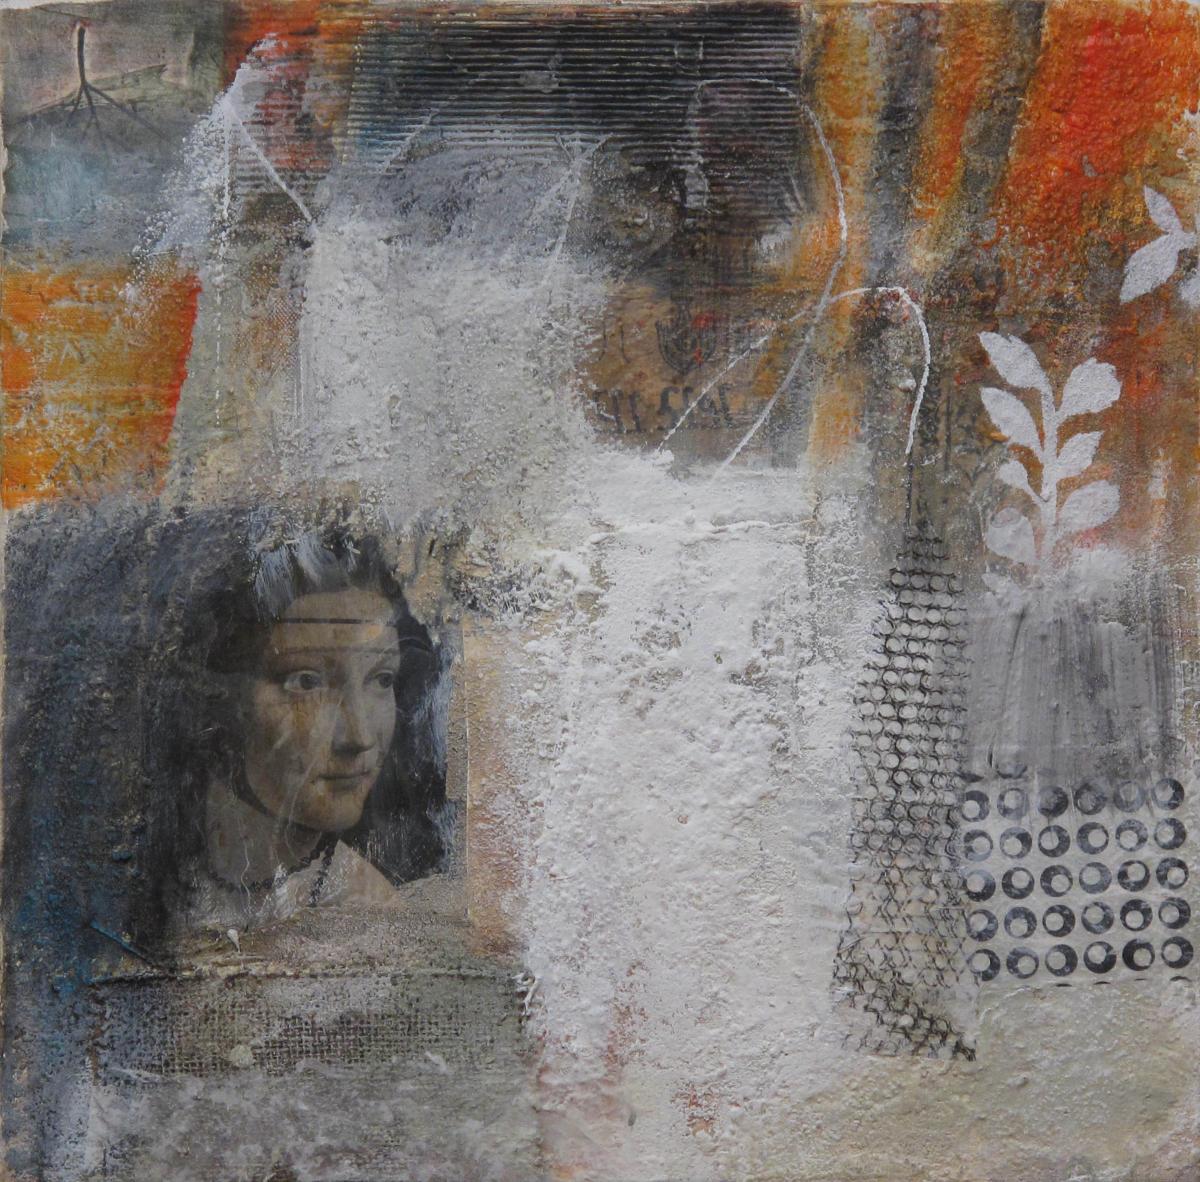 Die Geheimnisse der Wände III, 2010, Acryl und Collage auf Leinwand, 50 x 50 cm